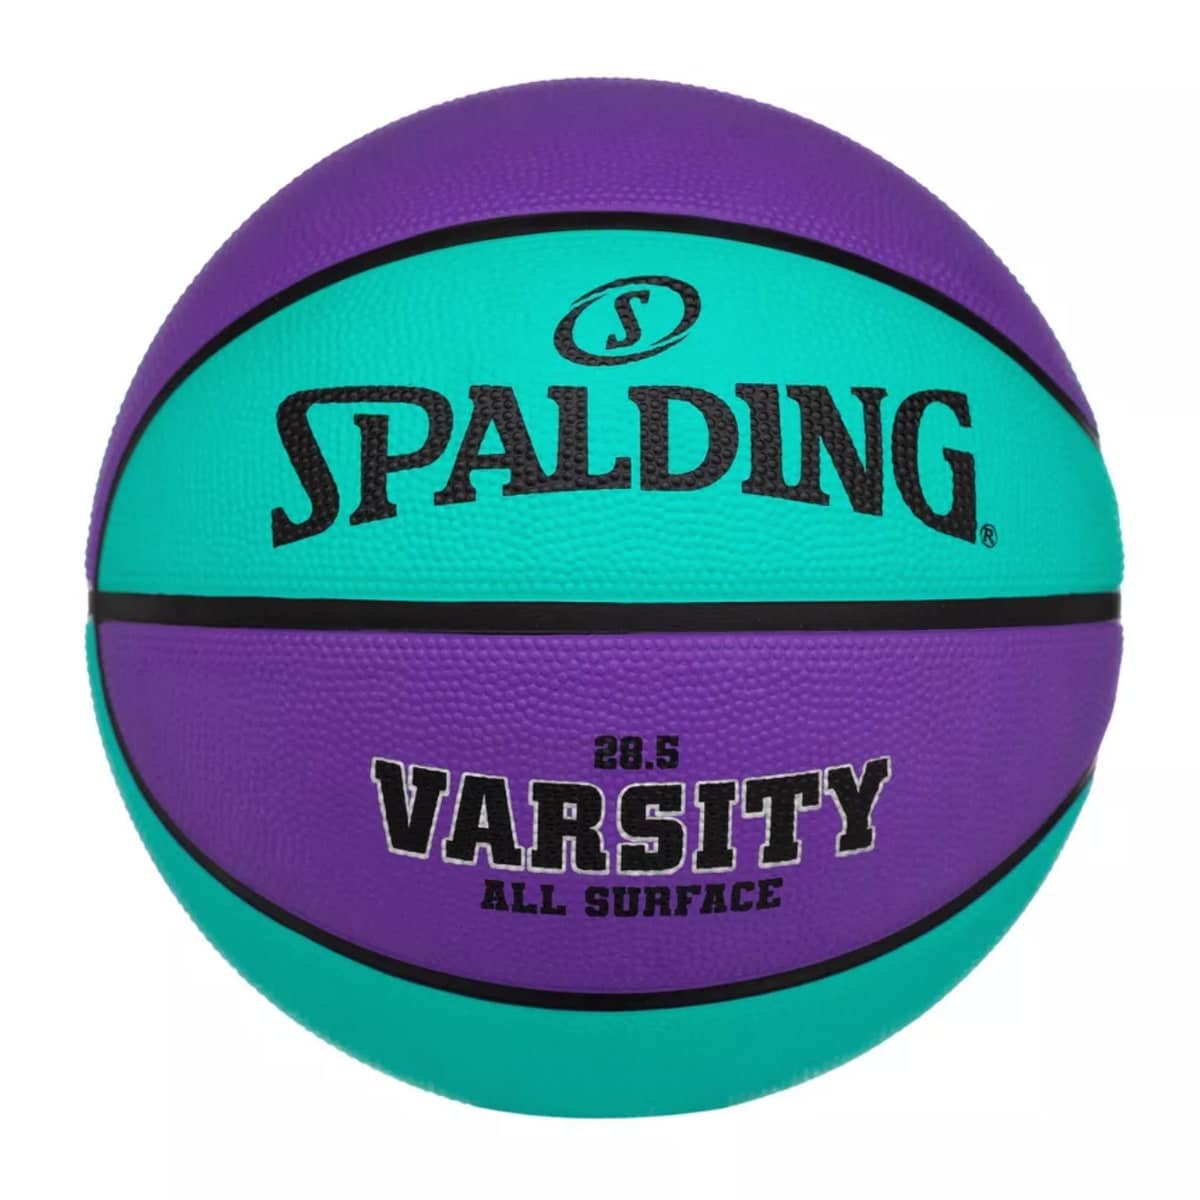 Spalding Varsity Basketball at Target